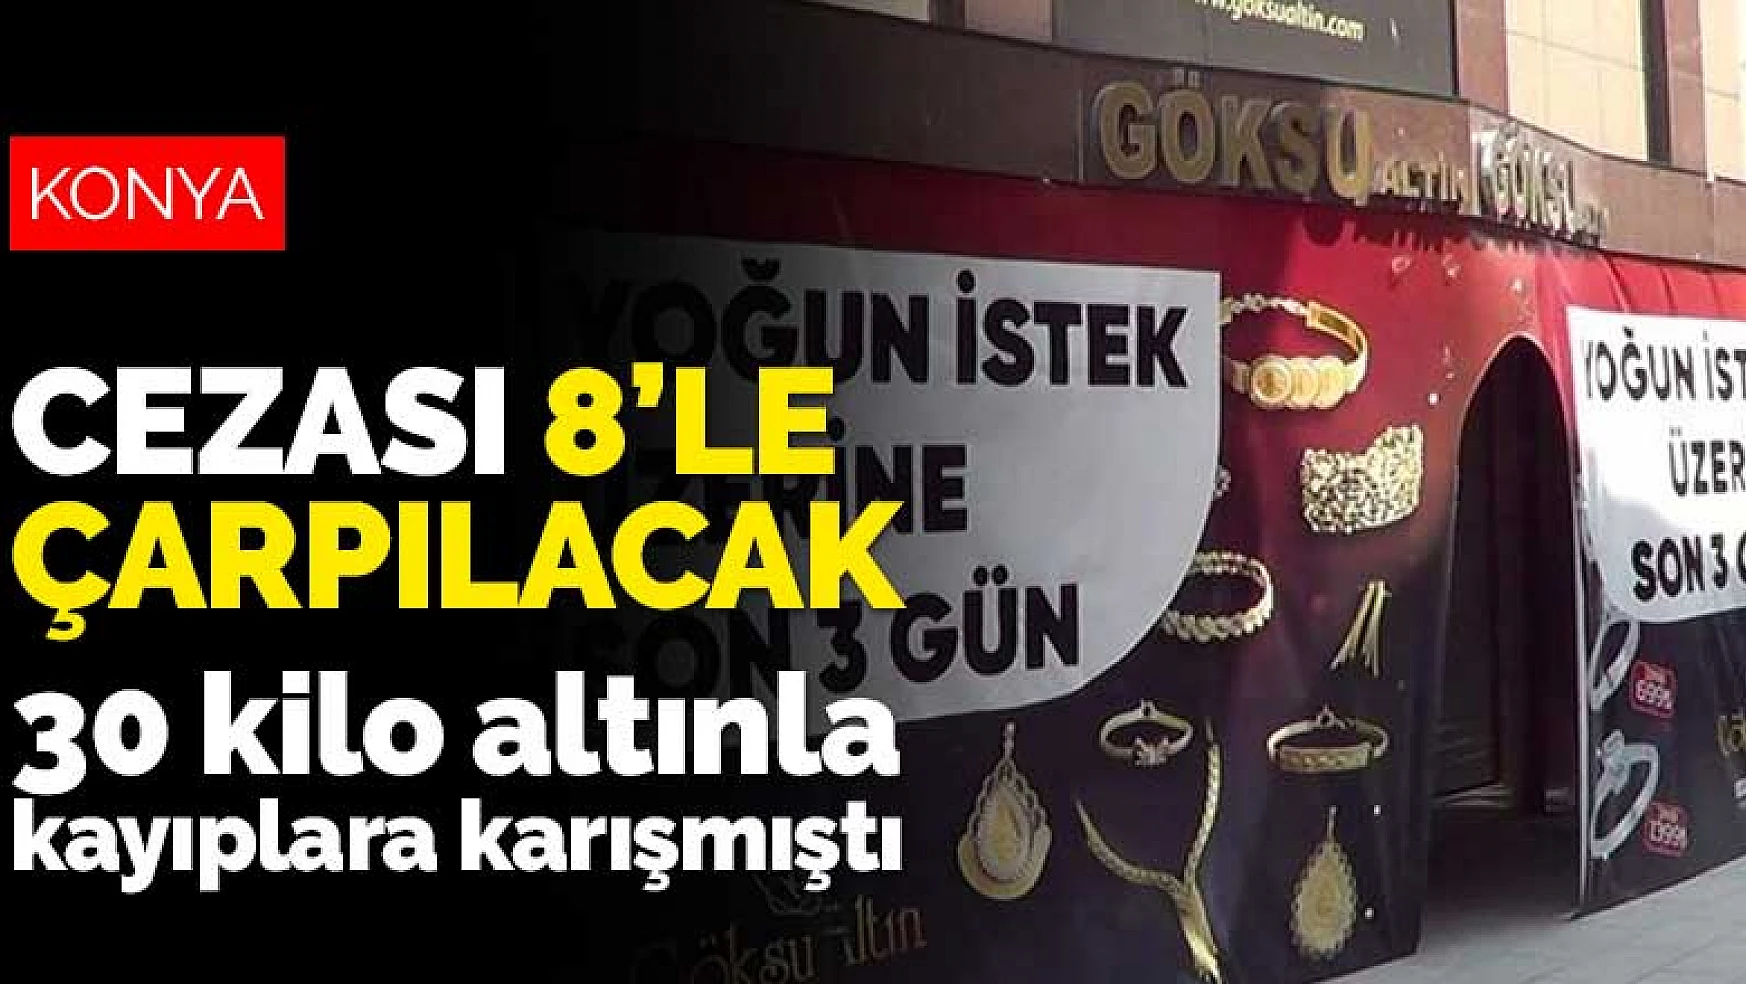 Konya'dan bavula doldurduğu 30 kilo altınla İstanbul'a kaçmıştı! Cezası 8'le çarpılacak